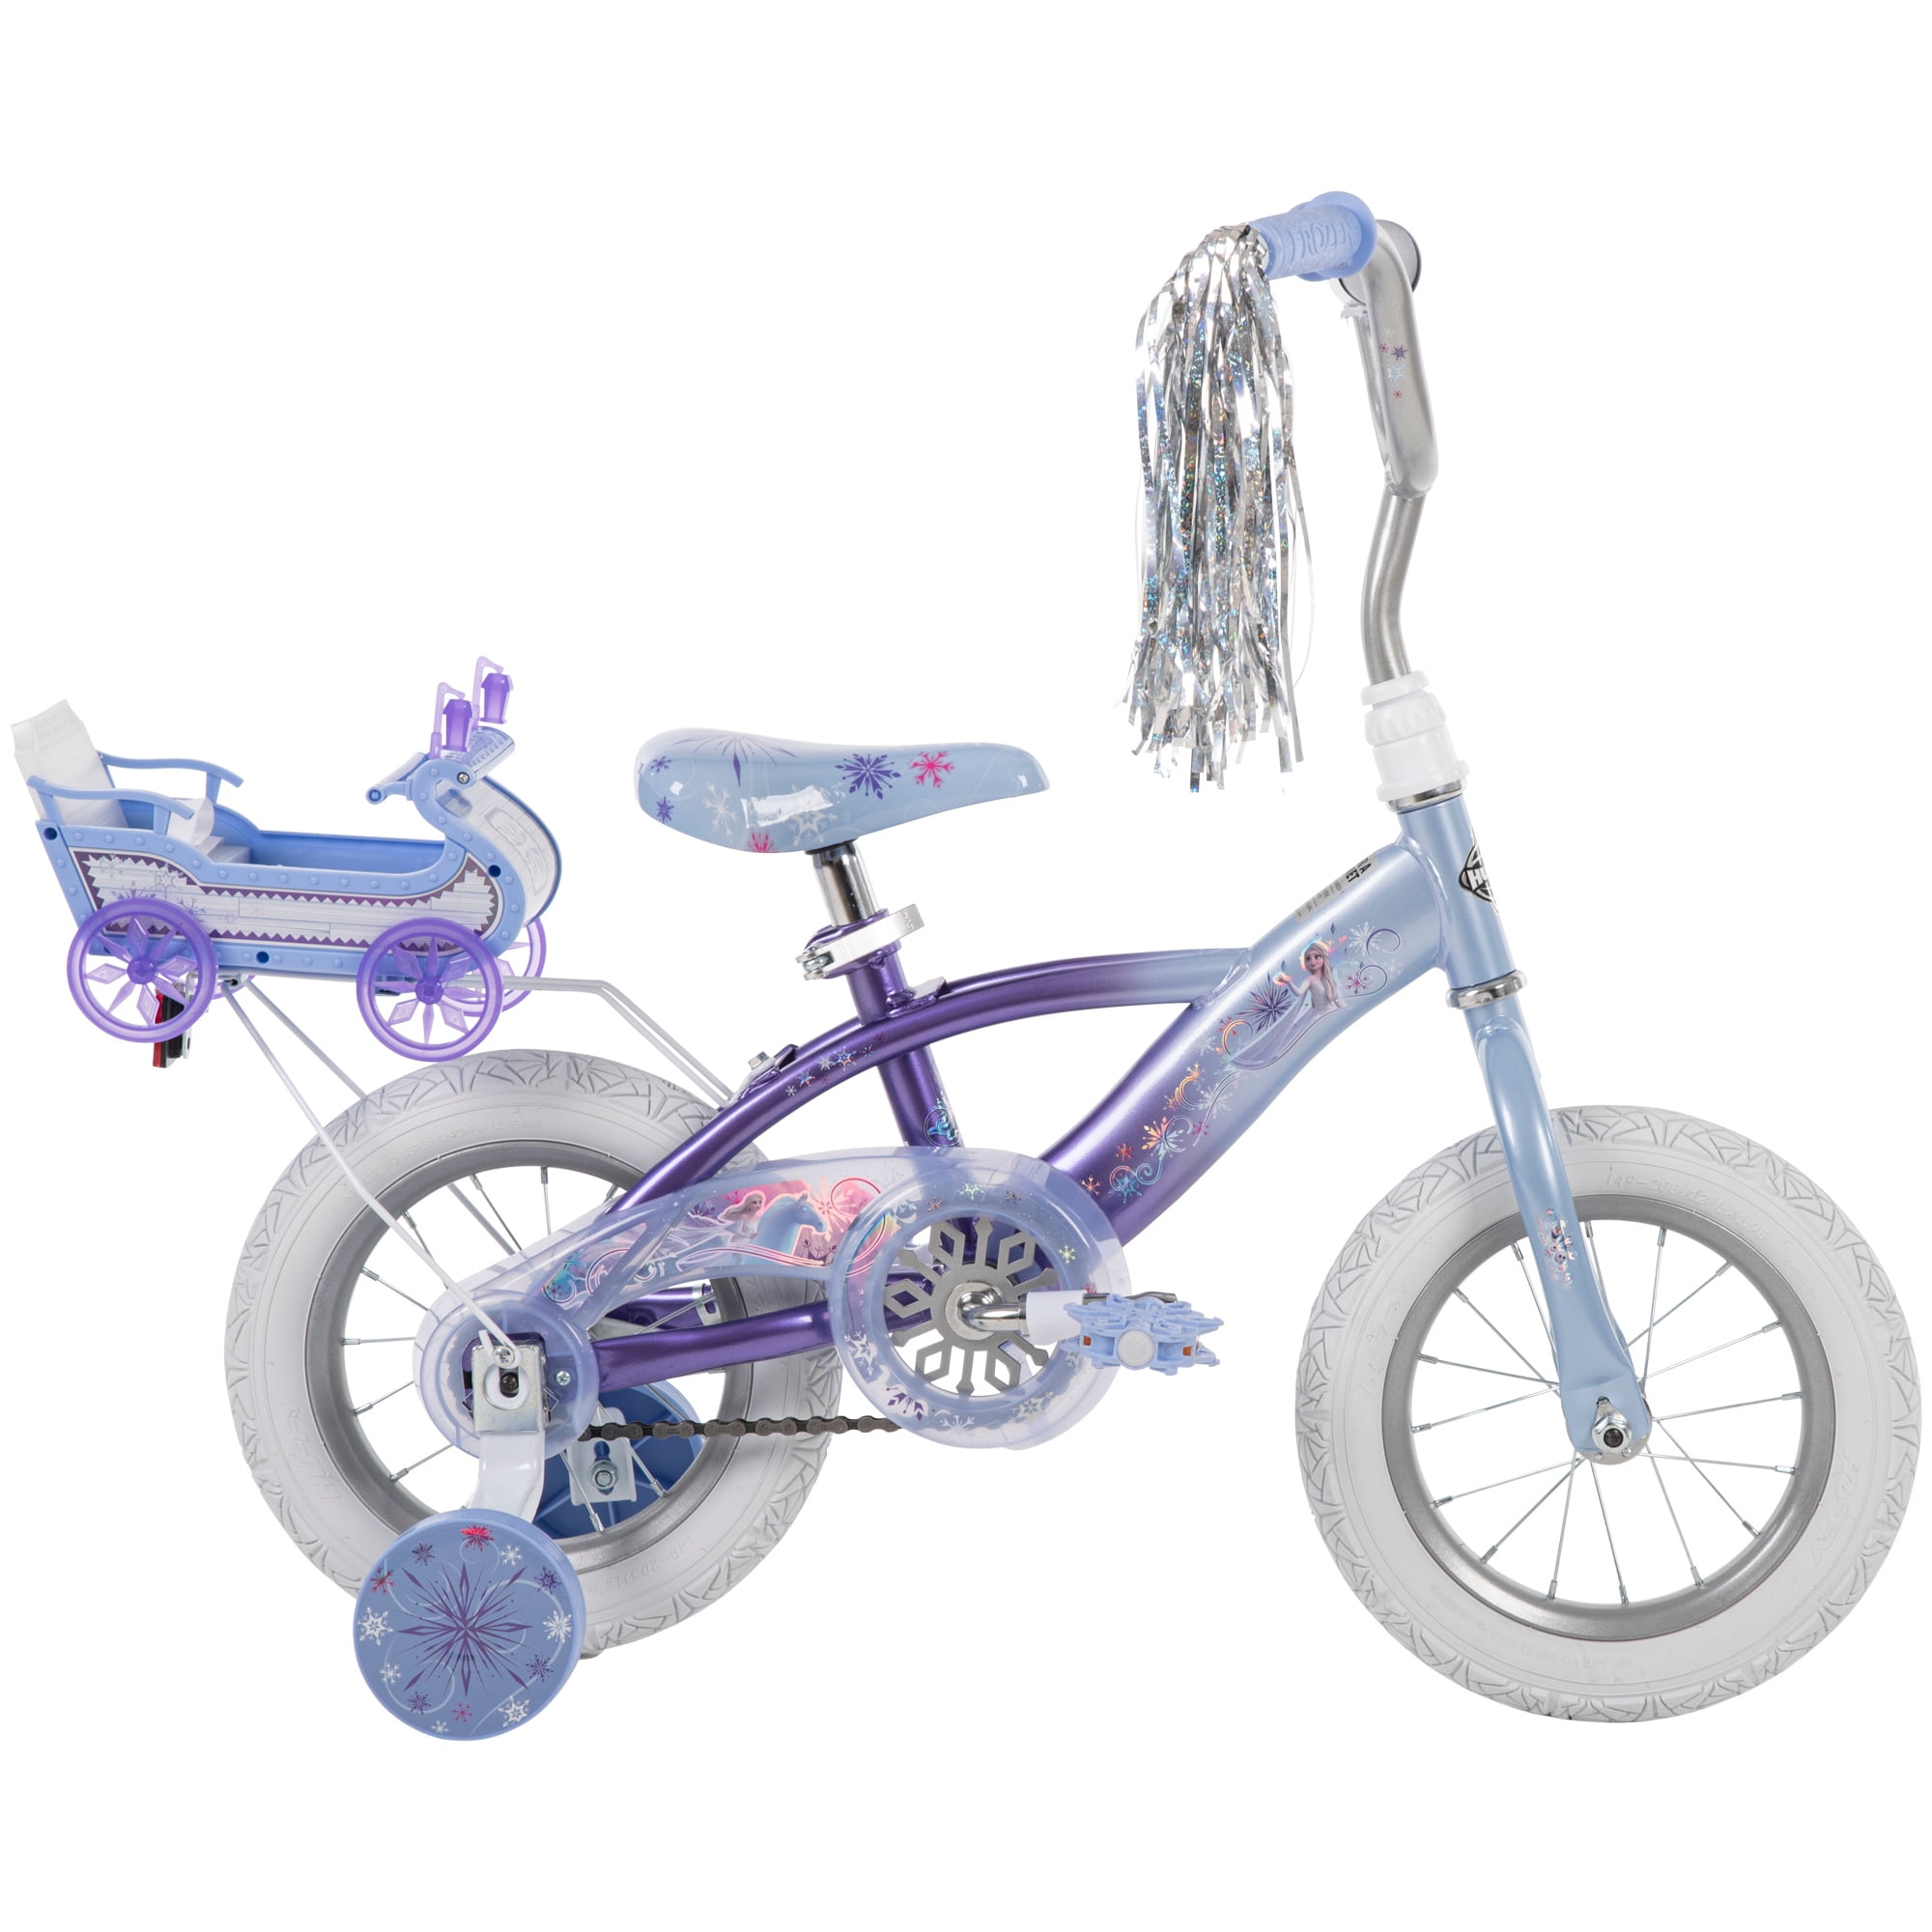 Bicicleta para niña Rin16 - 16GK010